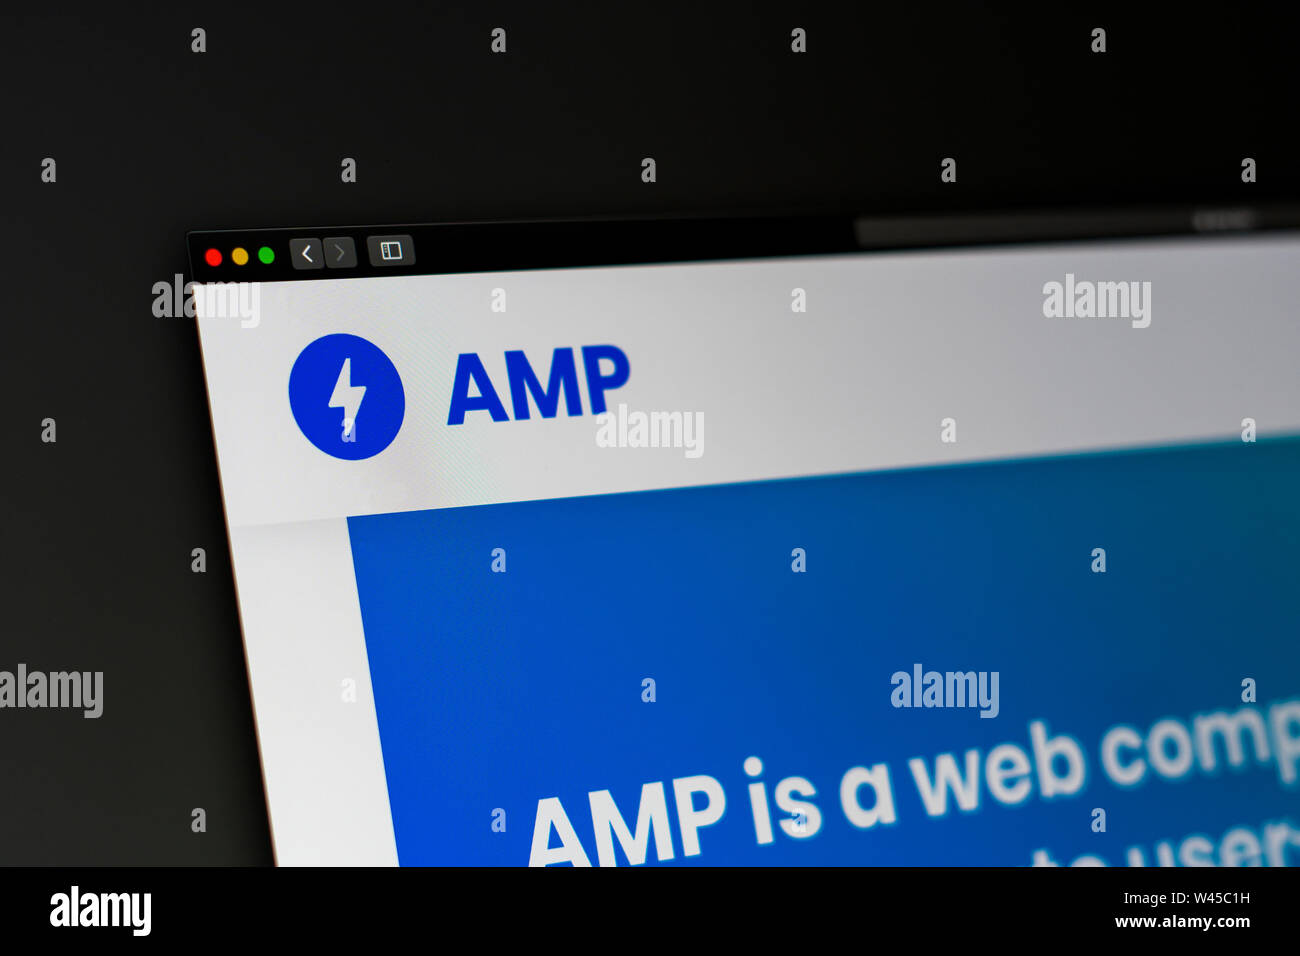 AMP-Startseite. Nahaufnahme des AMP-Logo. Kann als illustrative für Medien, Marketing oder Business Konzept verwendet werden. Stockfoto